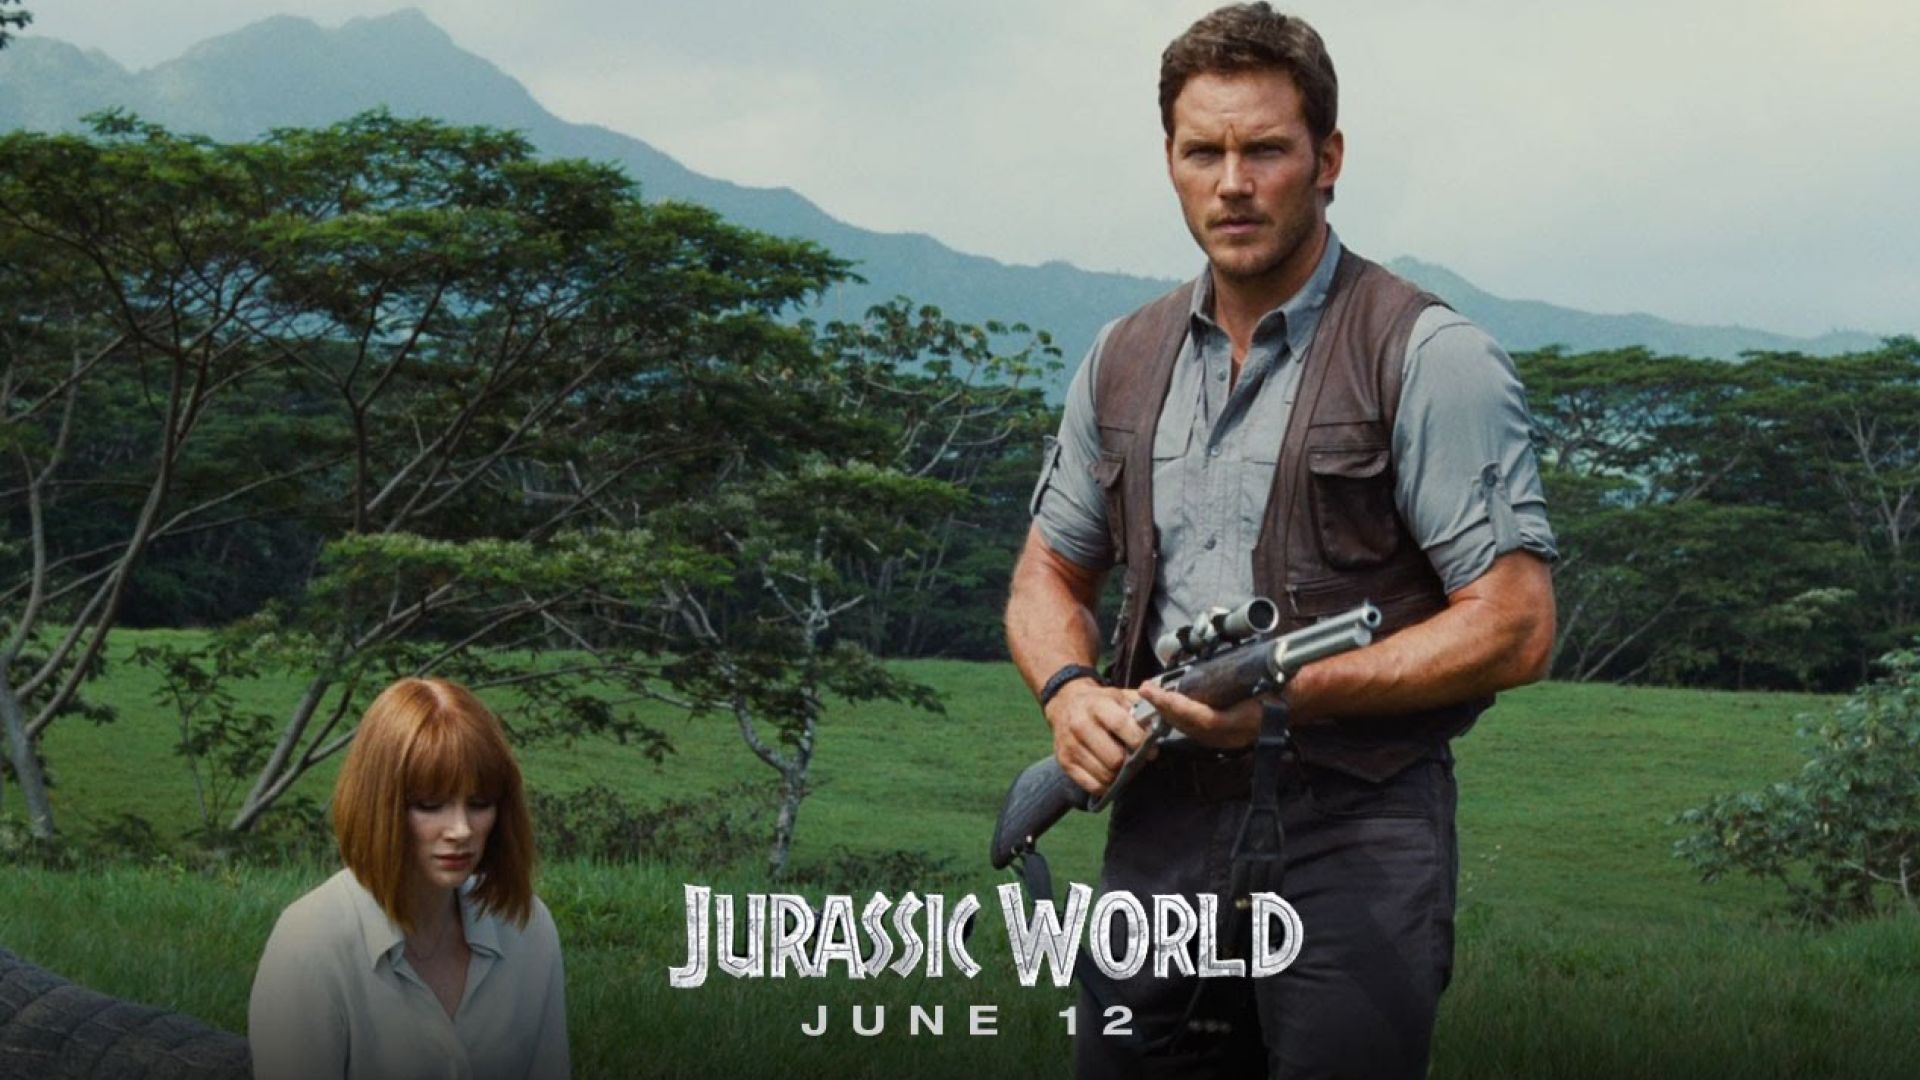 Killing for Sport in New TV Spot for 'Jurassic World' .